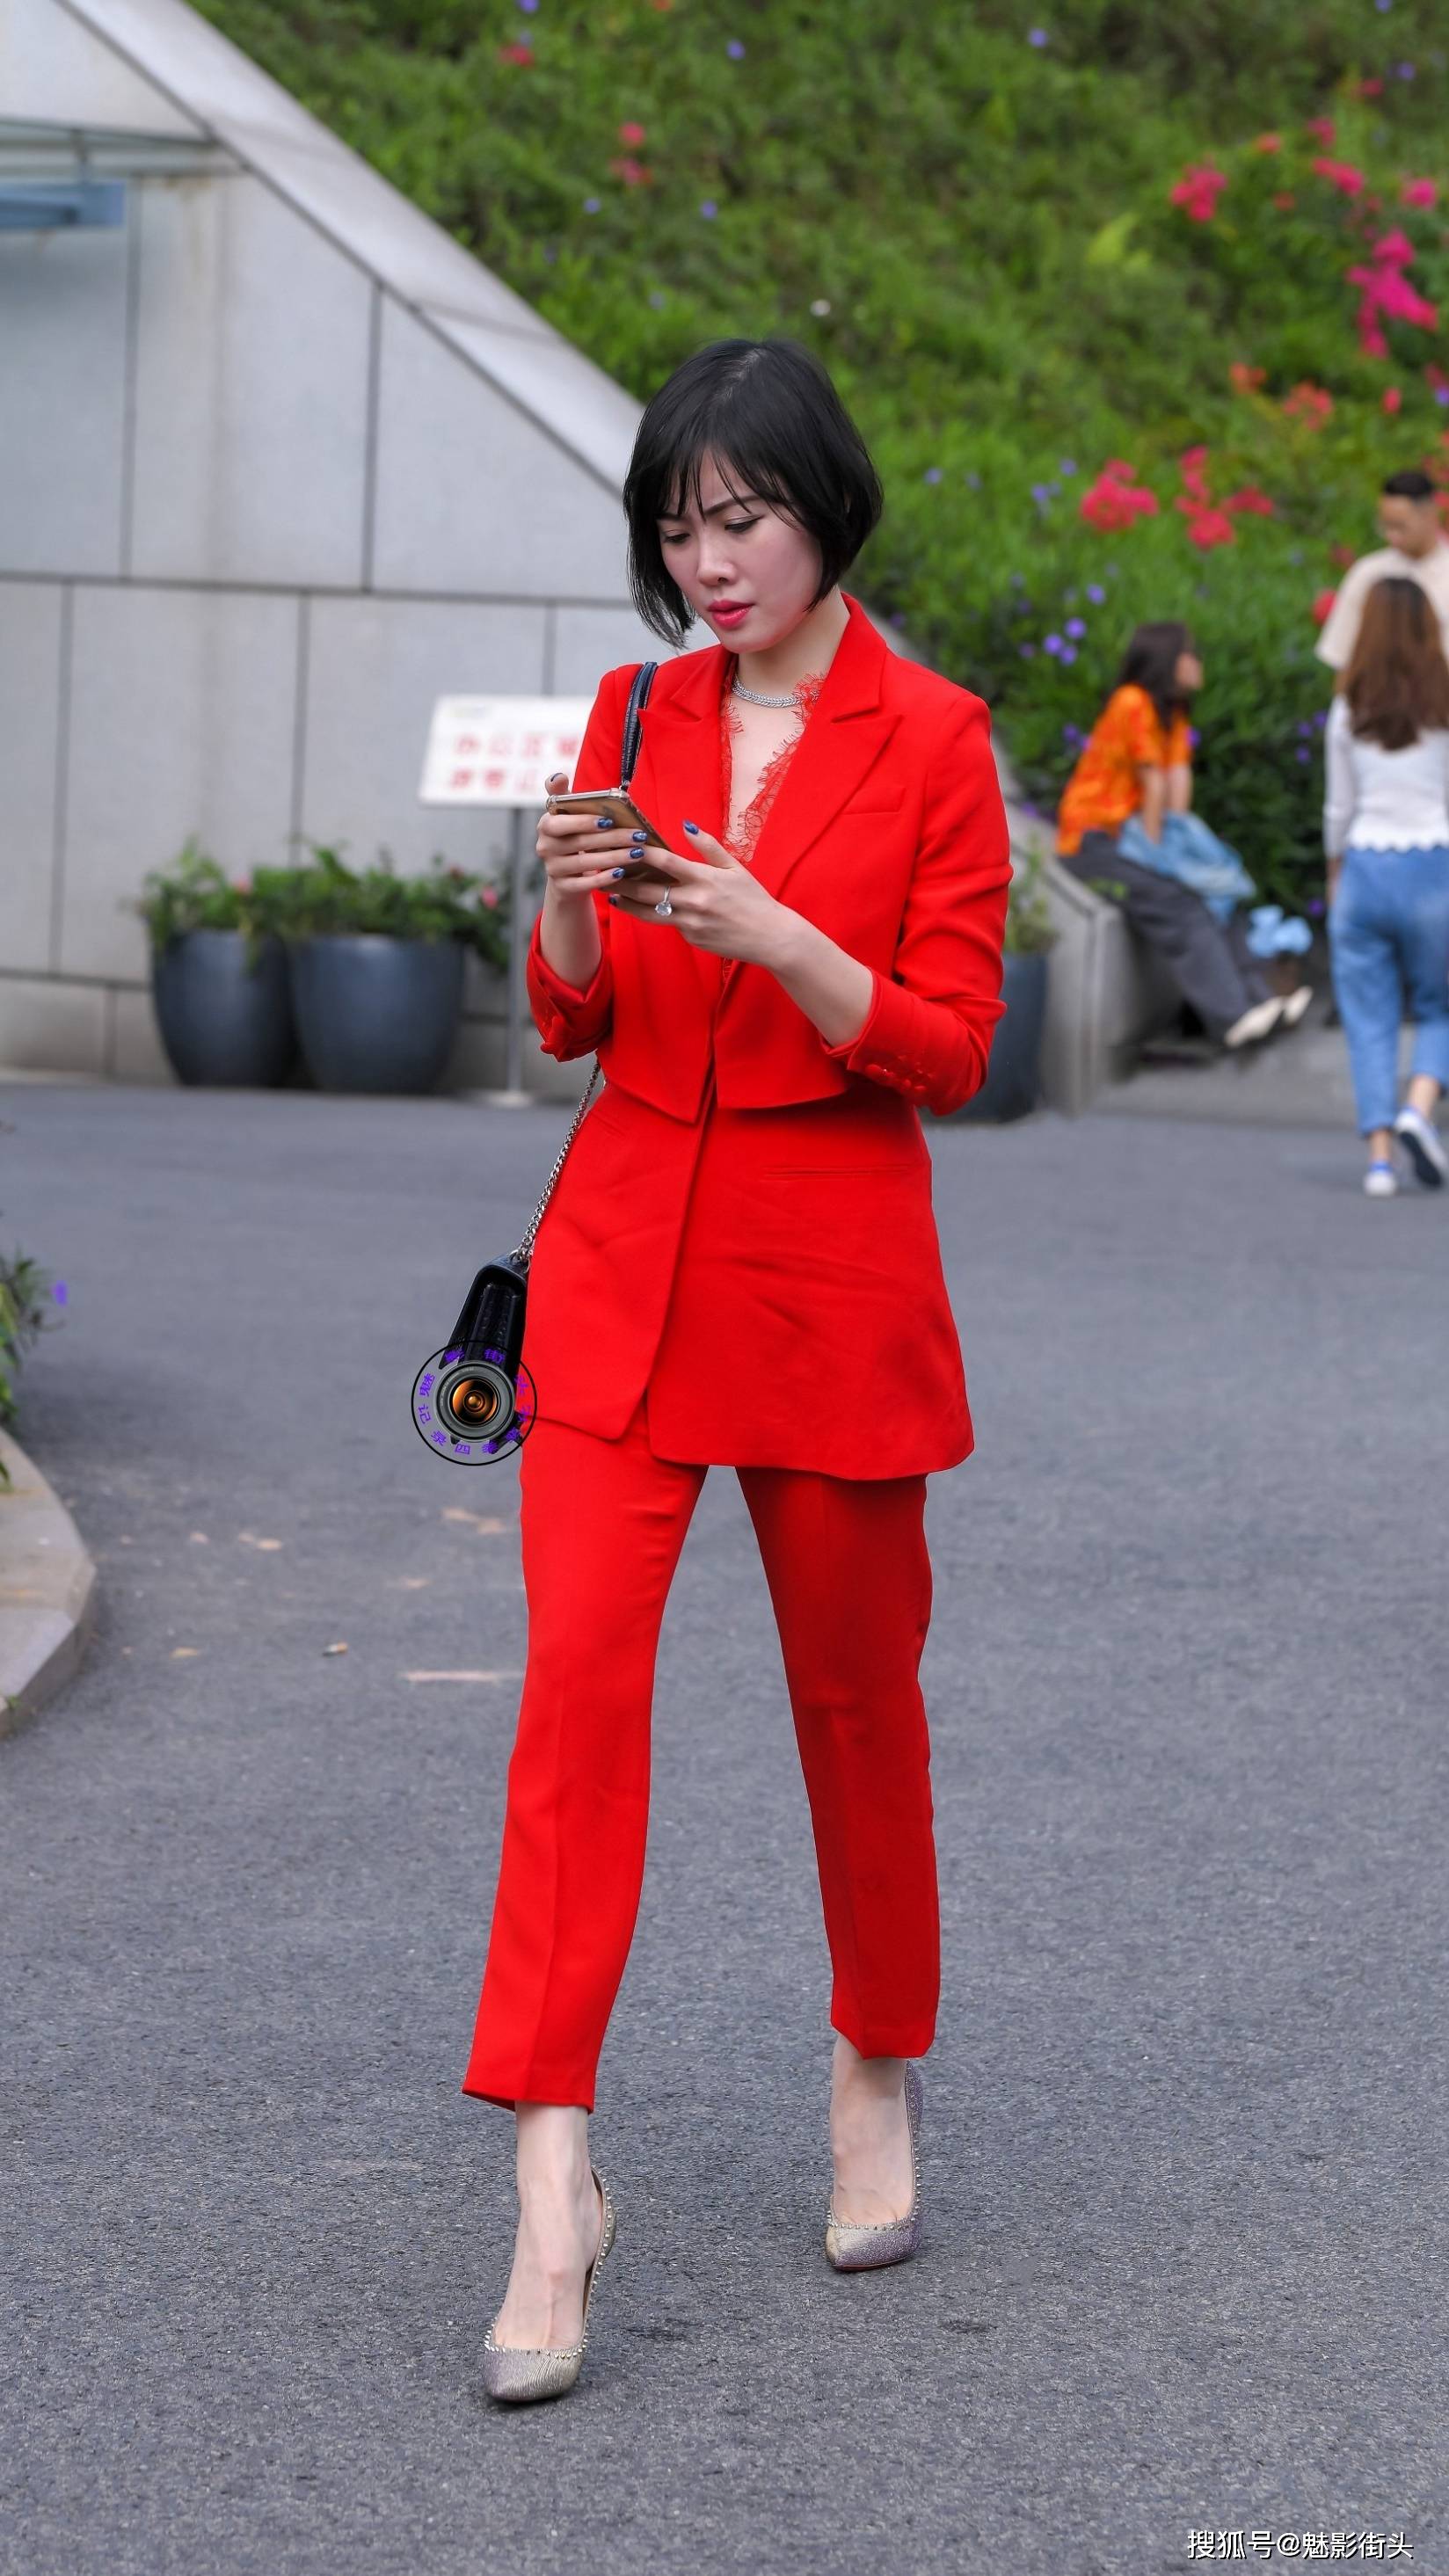 精致的短发美女红色西服套装搭配紫色尖头细跟鞋展现高贵气质